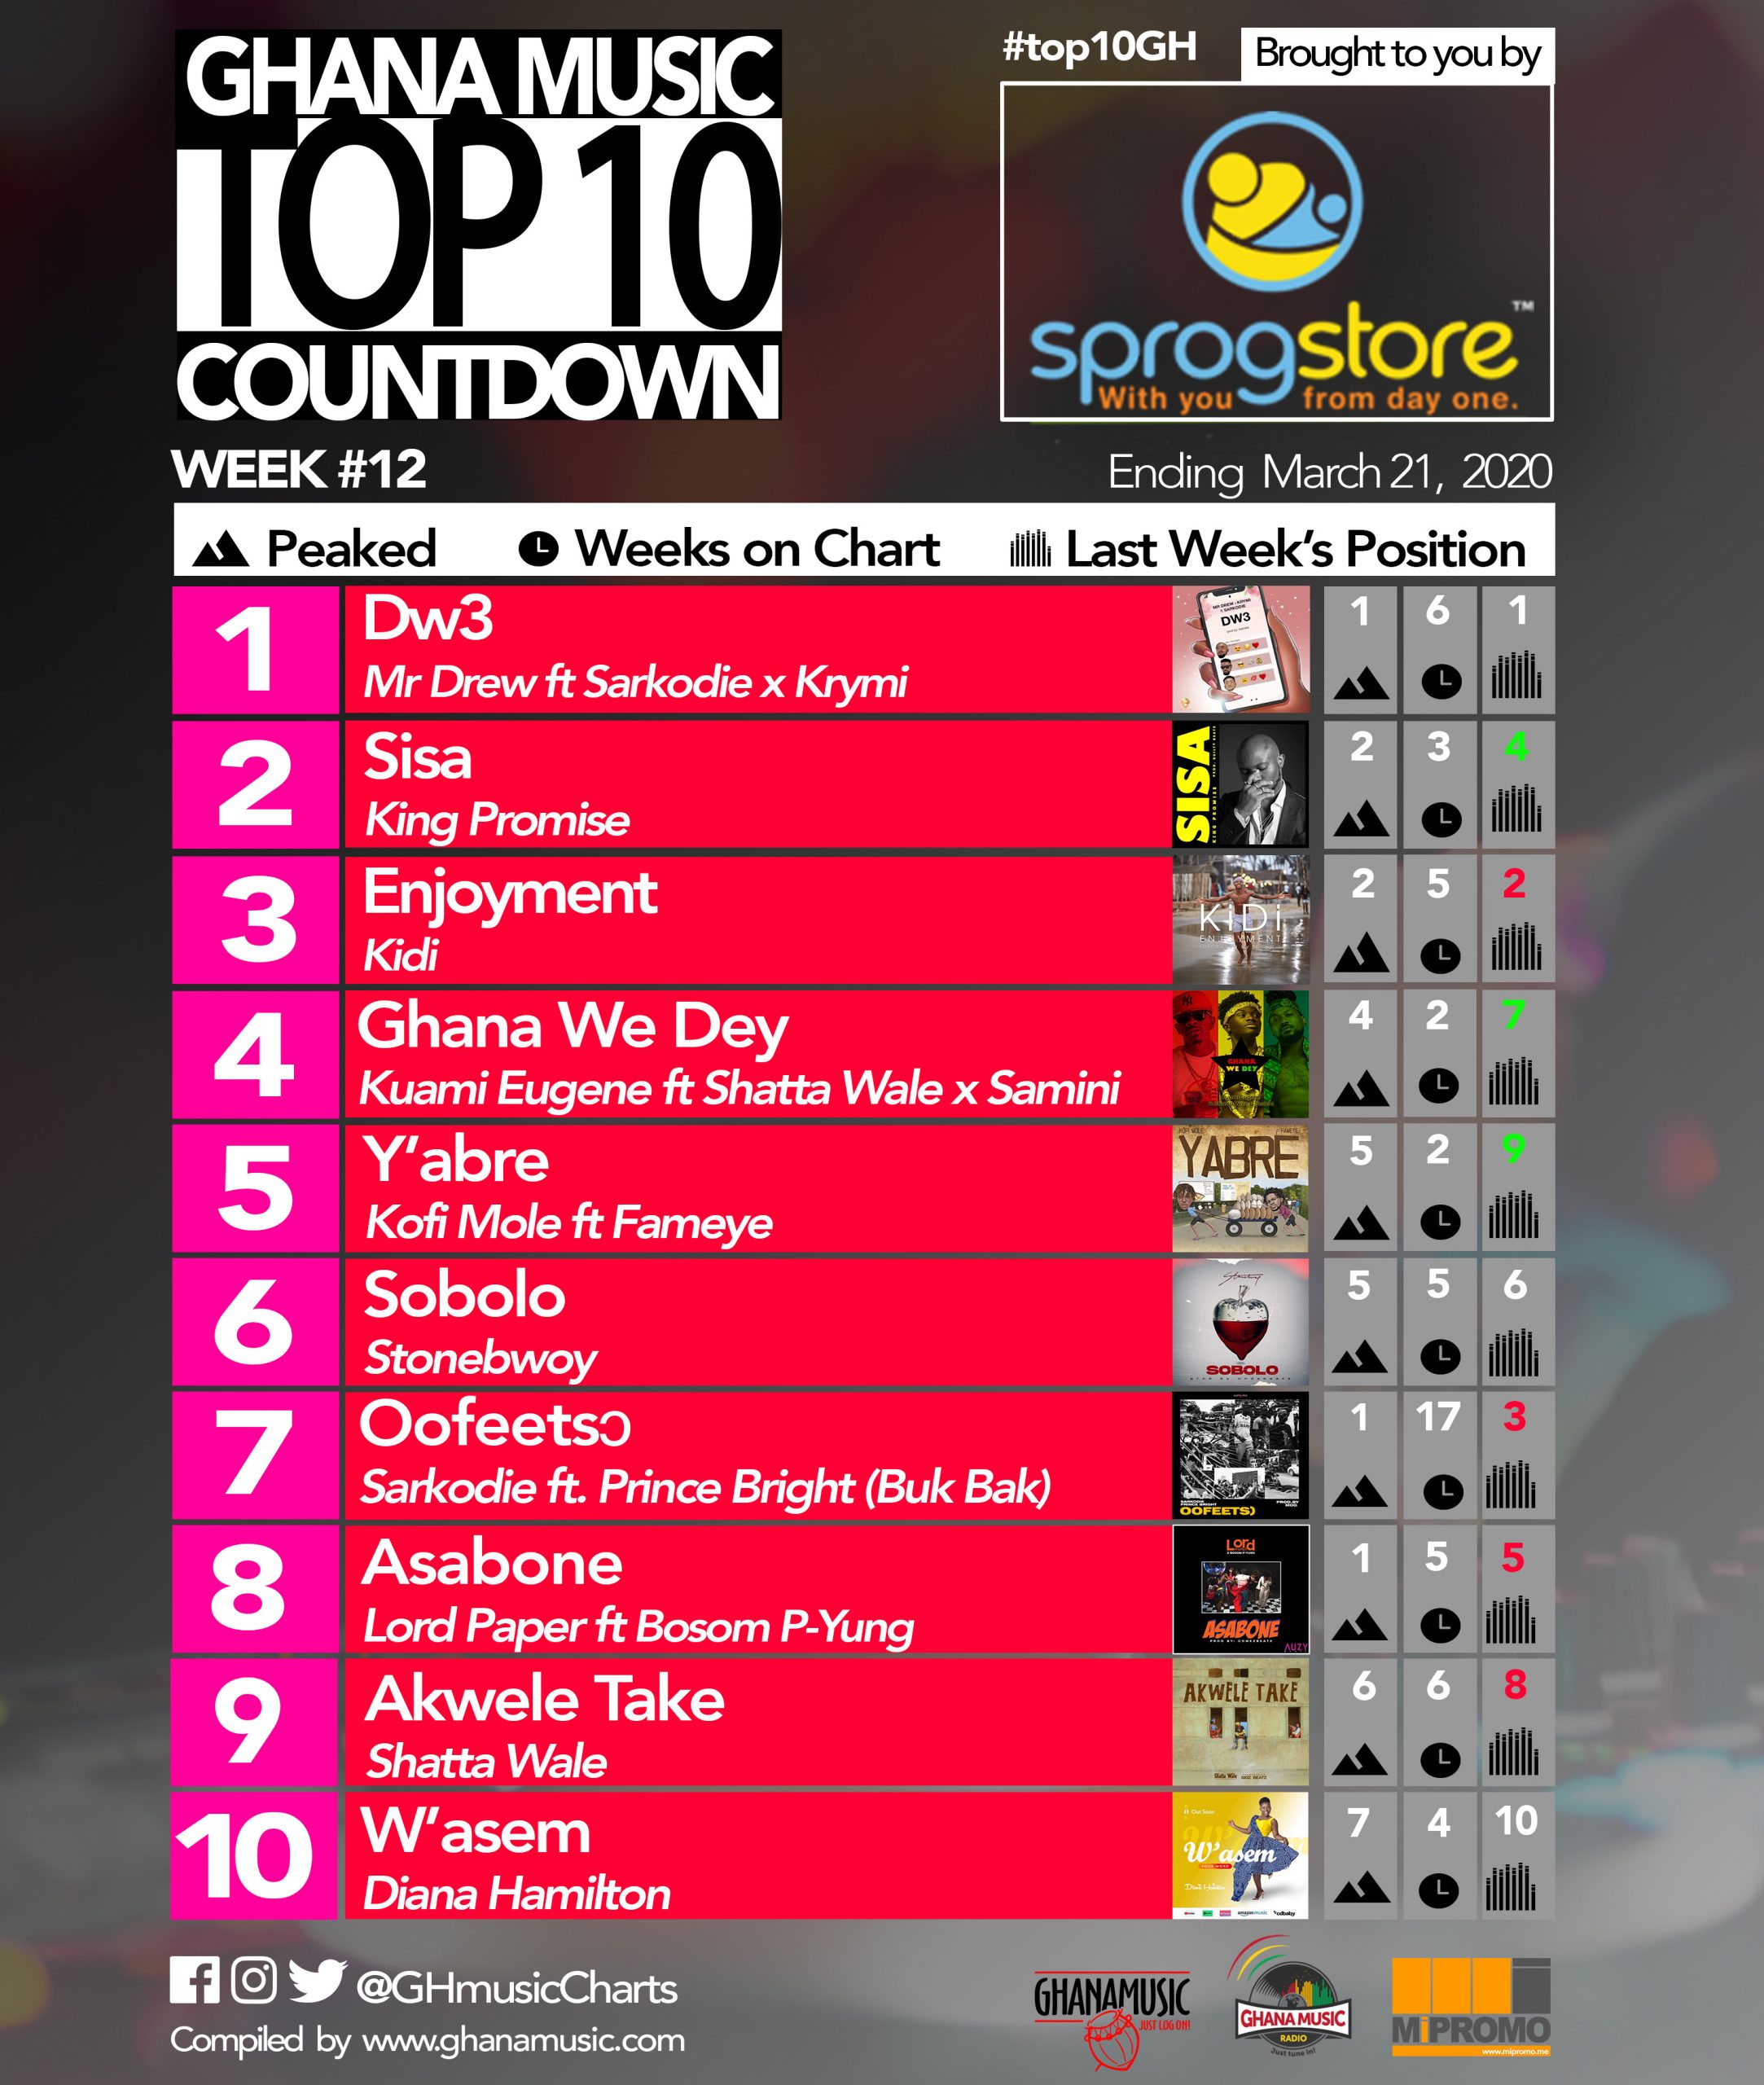 2020 Week 12: Ghana Music Top 10 Countdown